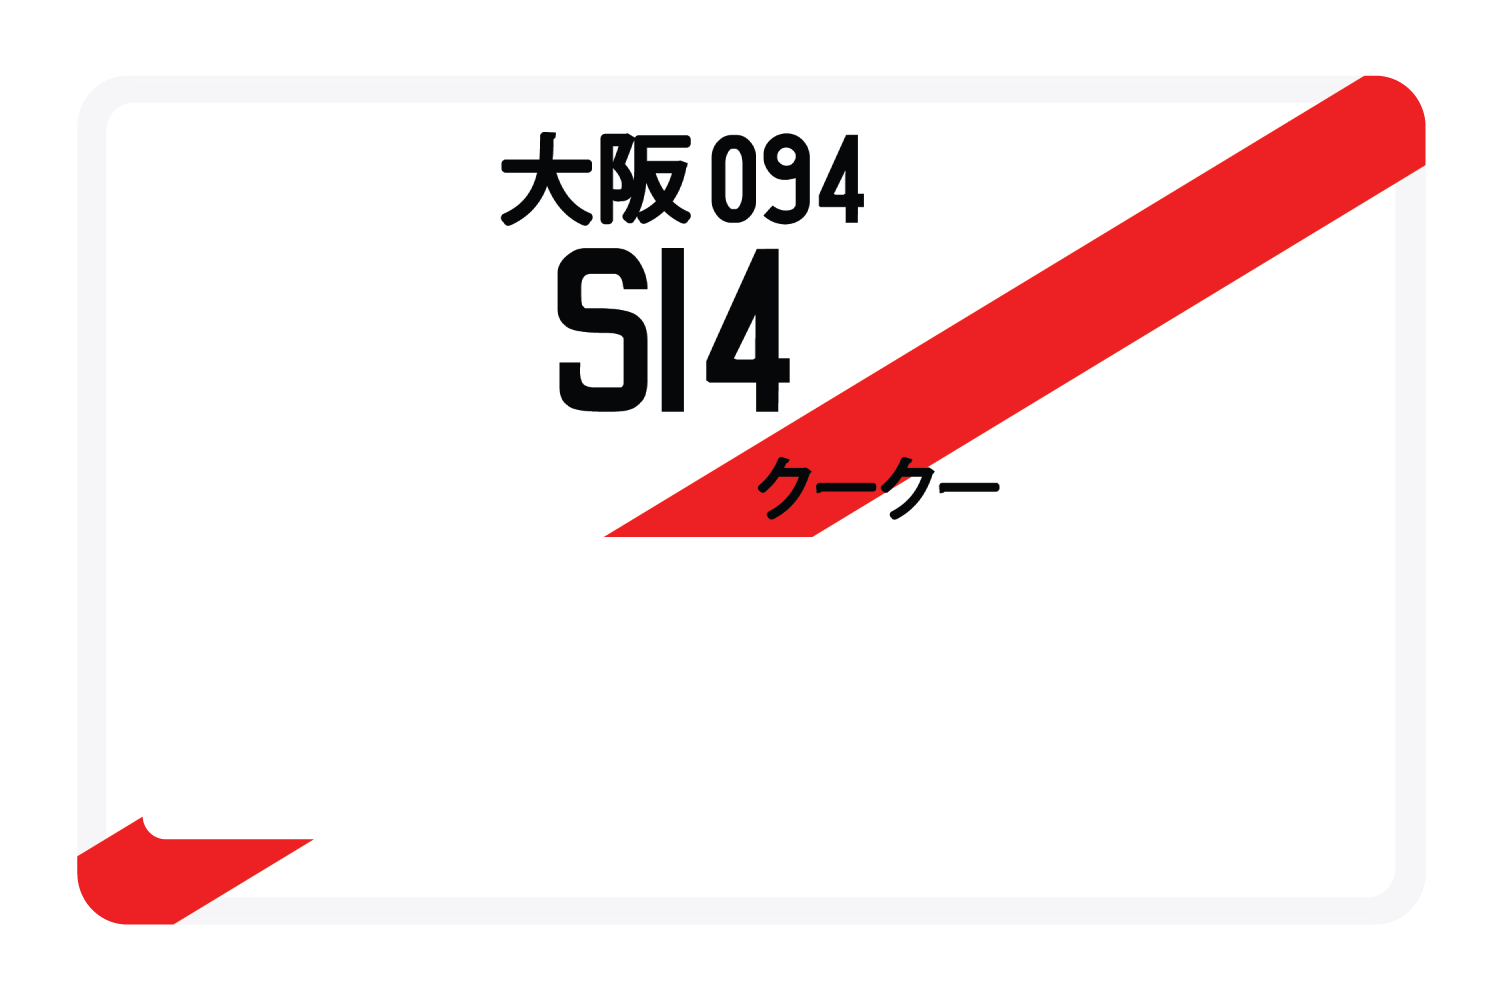 S14